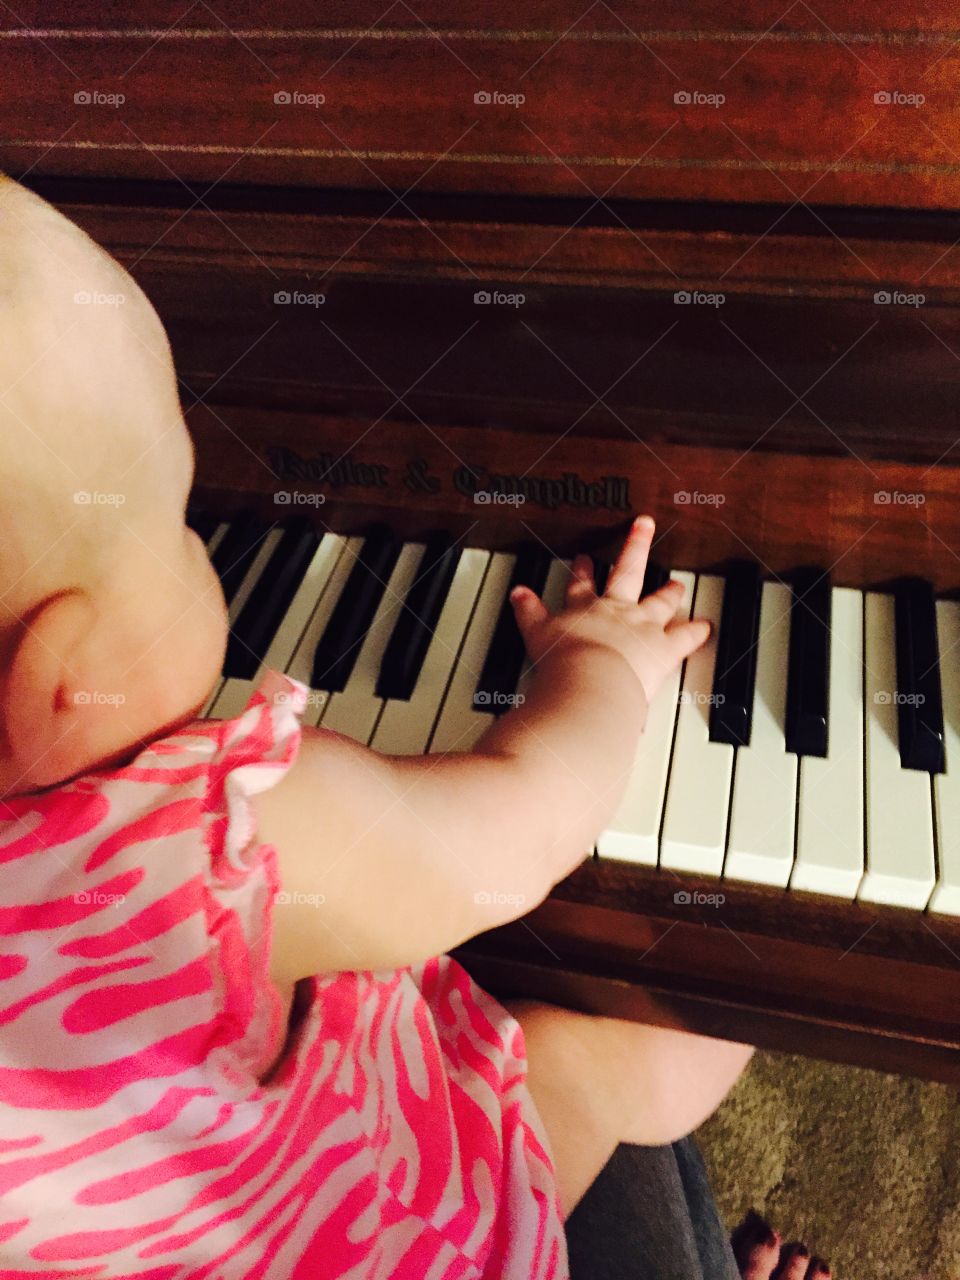 Beginner Pianist 3. Baby playing piano 